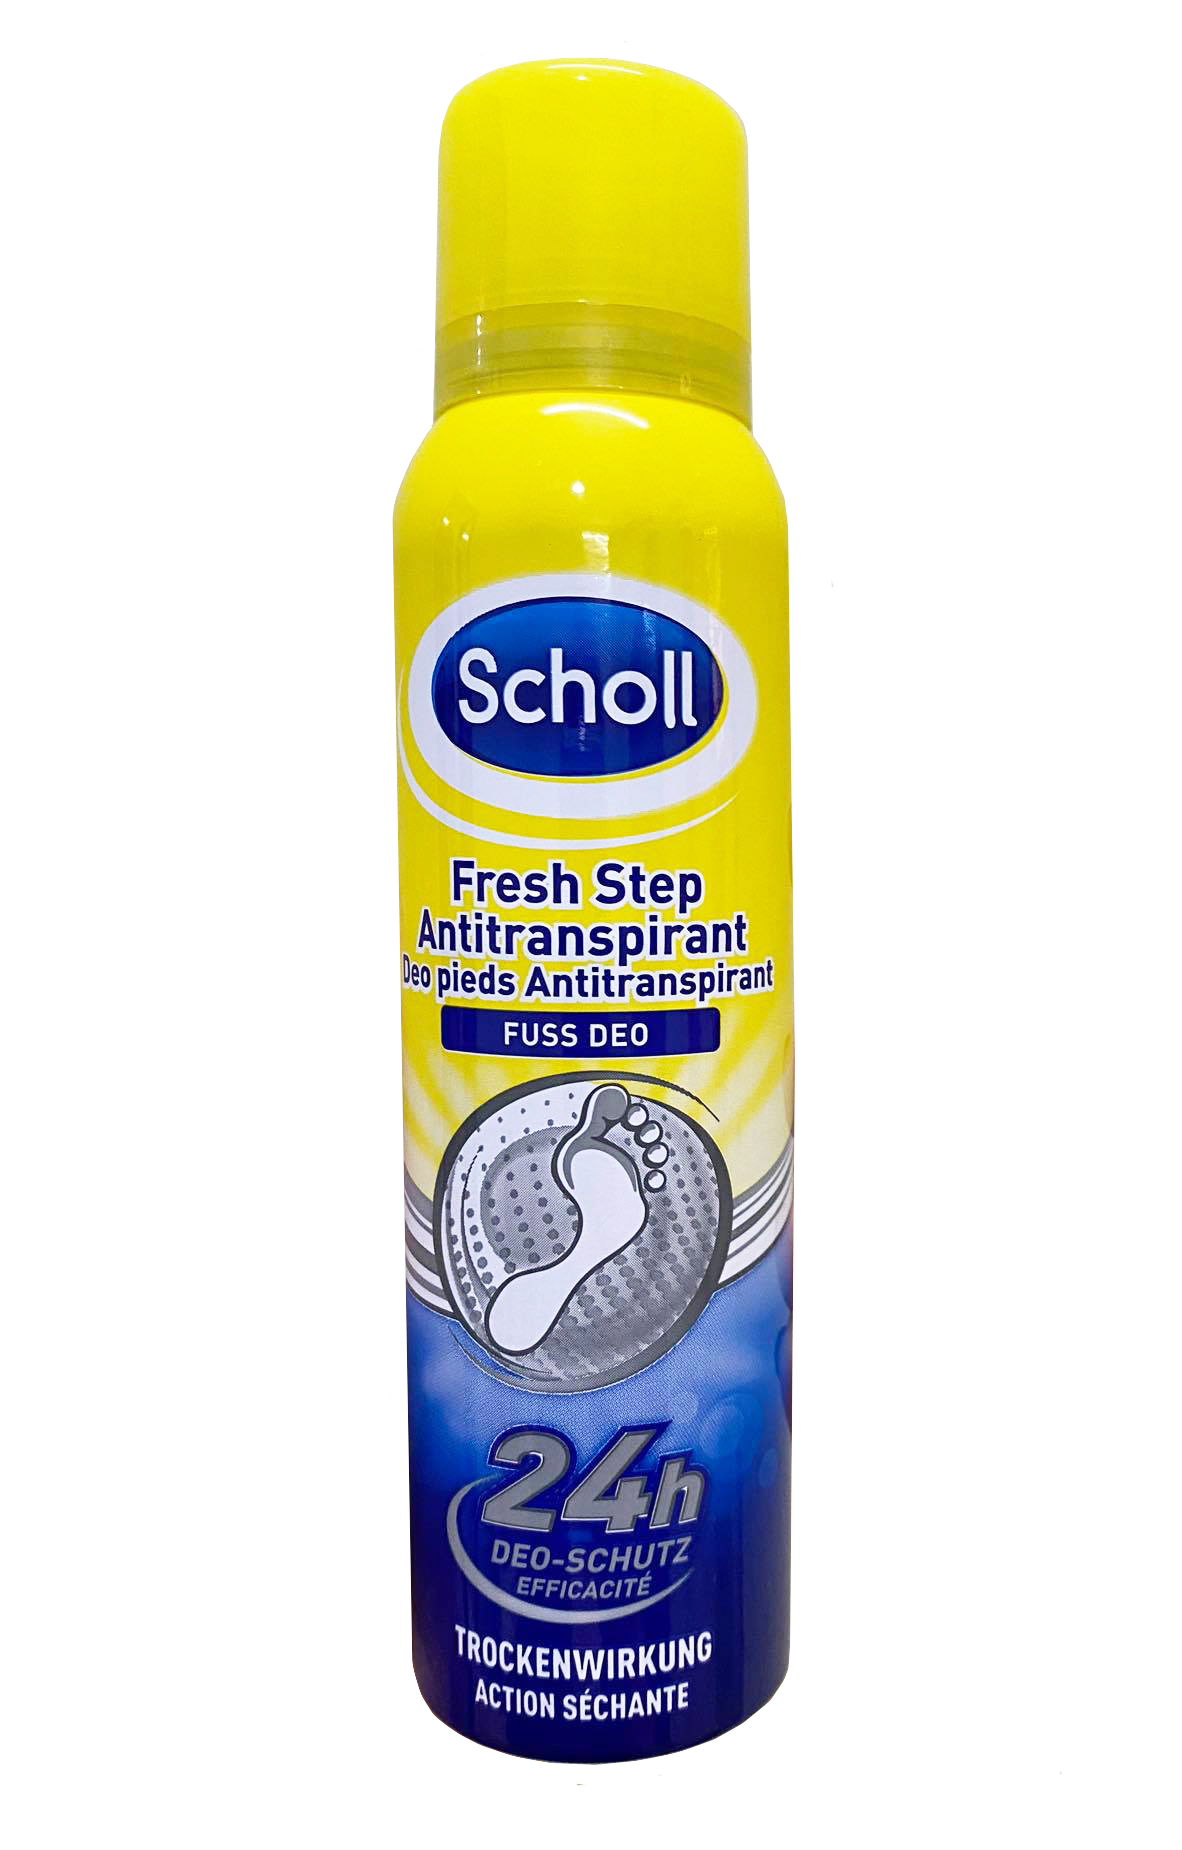 Khử mùi hôi chân Scholl dạng chai xịt tiện dụng với các thành phần tự nhiên